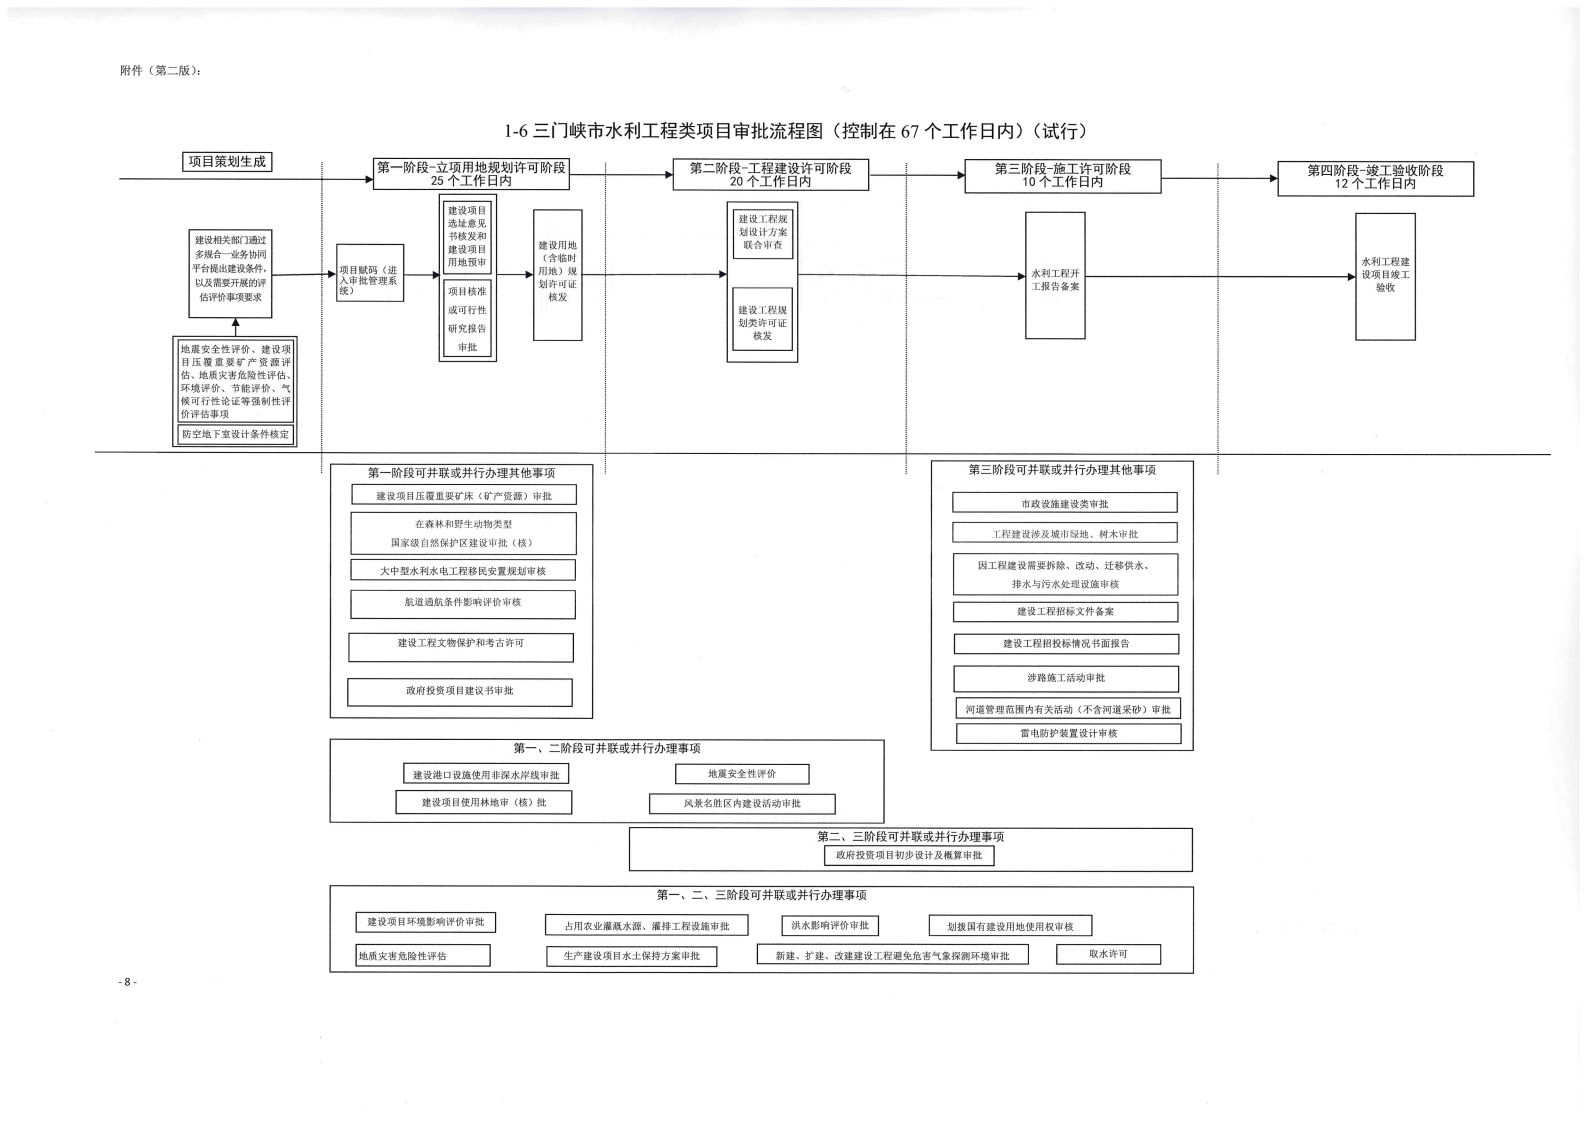 《, . 《三门峡市政府投资房屋建筑类项目审批流程图》（试行）等9类流程图的通知